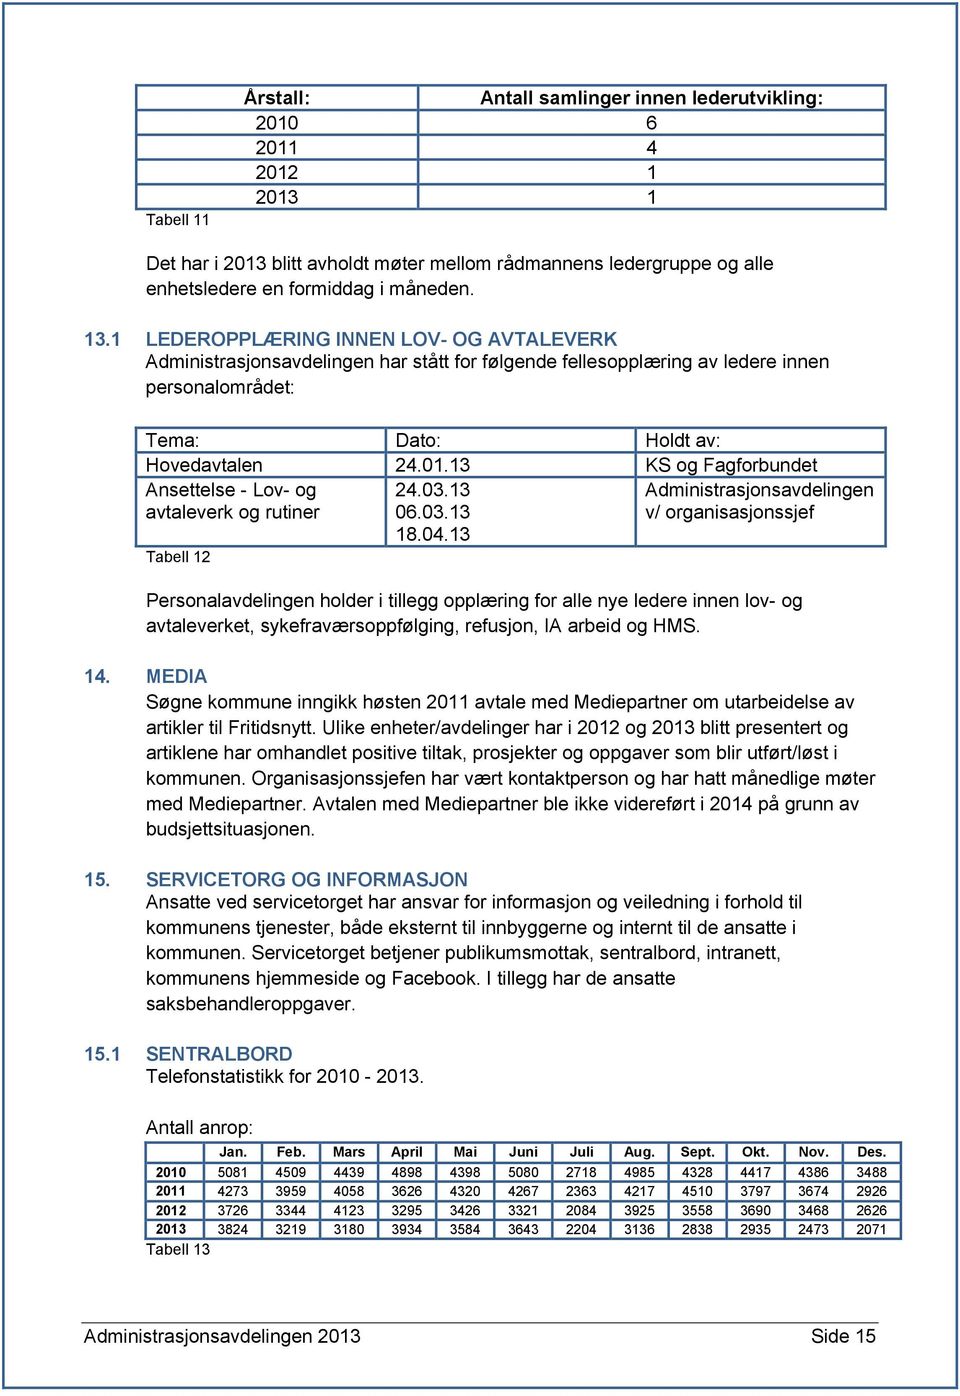 13 KS og Fagforbundet Ansettelse - Lov- og avtaleverk og rutiner Tabell 12 24.03.13 06.03.13 18.04.